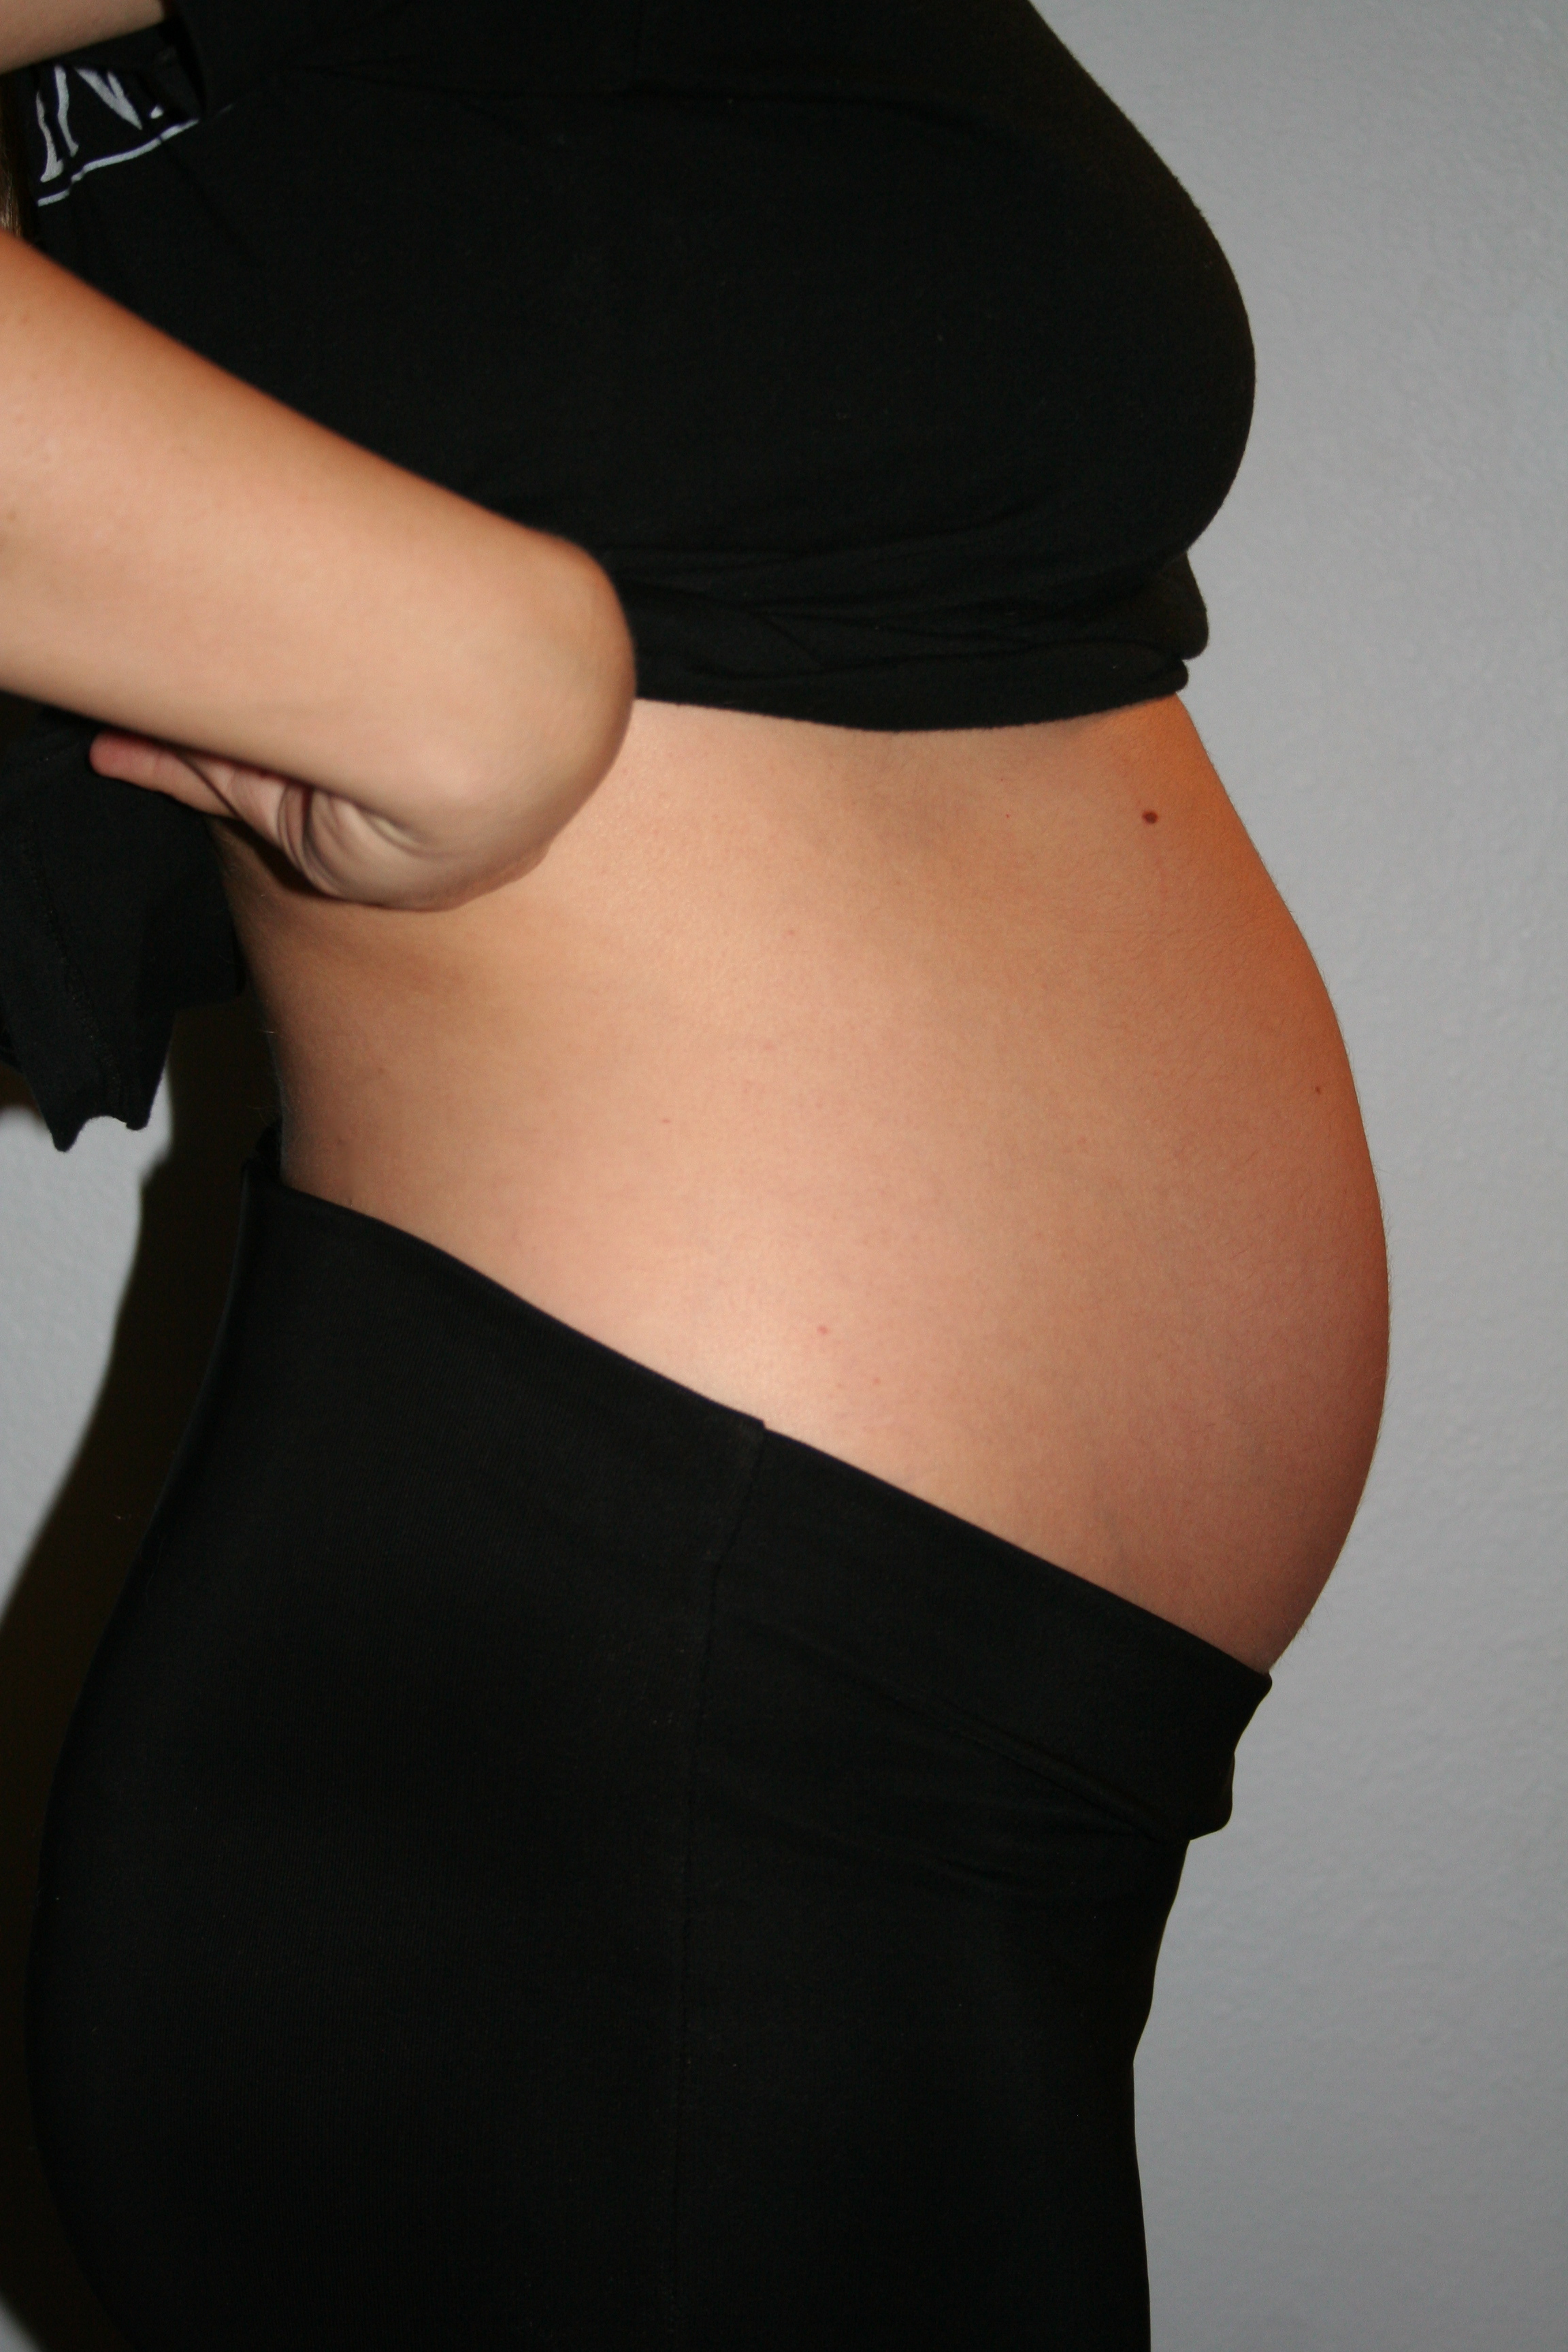 23 недели живот фото. Живот беременной. Беременность животик. Живот в три недели беременности. Животики беременных.